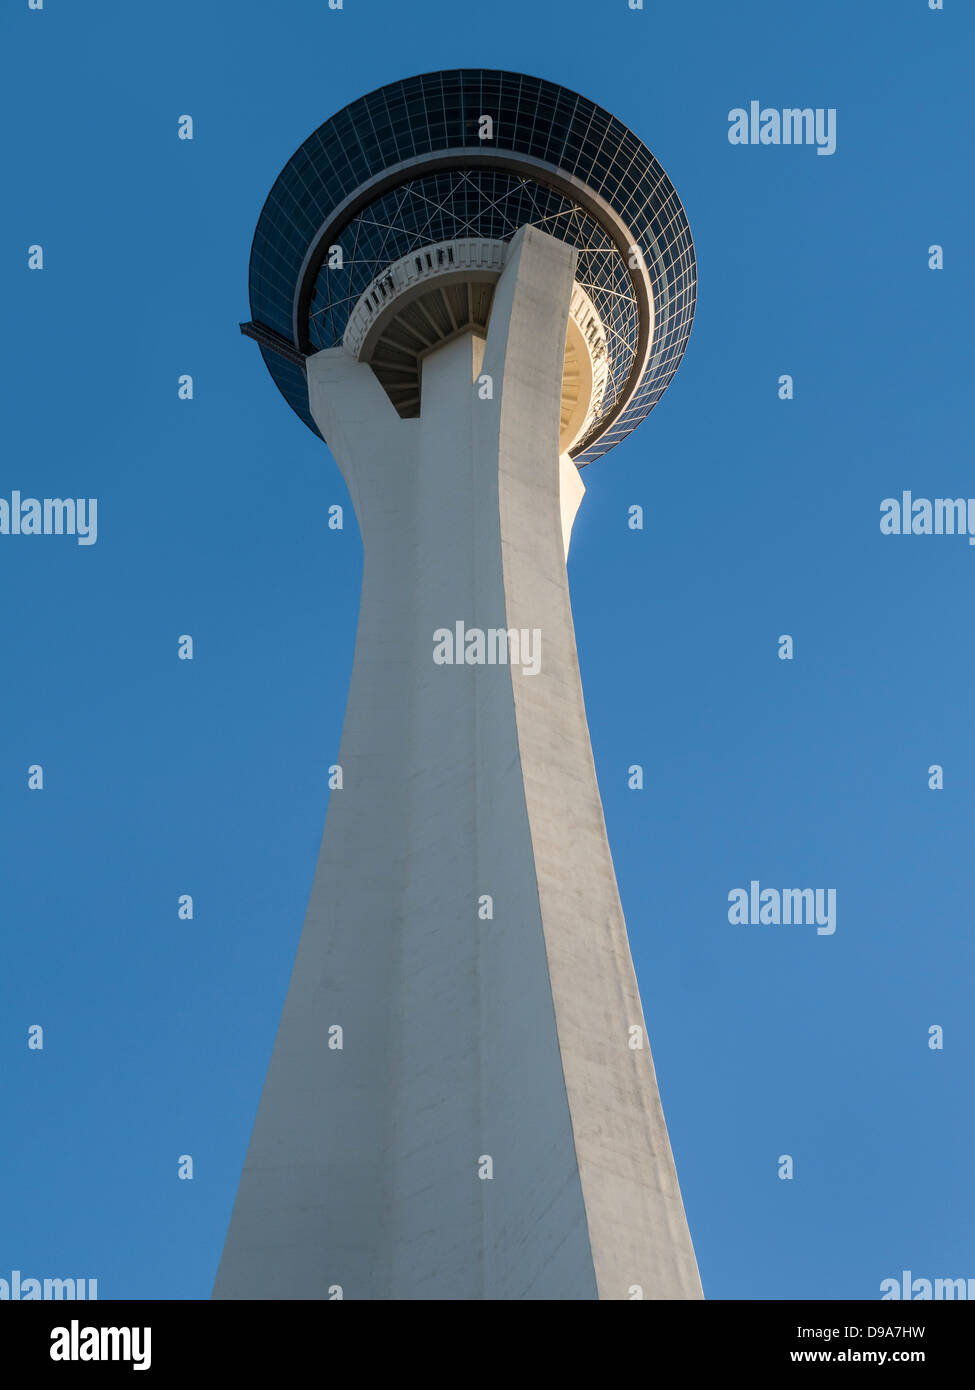 LAS VEGAS, NEVADA, Estados Unidos - 04 DE JUNIO de 2013: La torre de observación en el Stratosphere Casino Resort Hotel Foto de stock